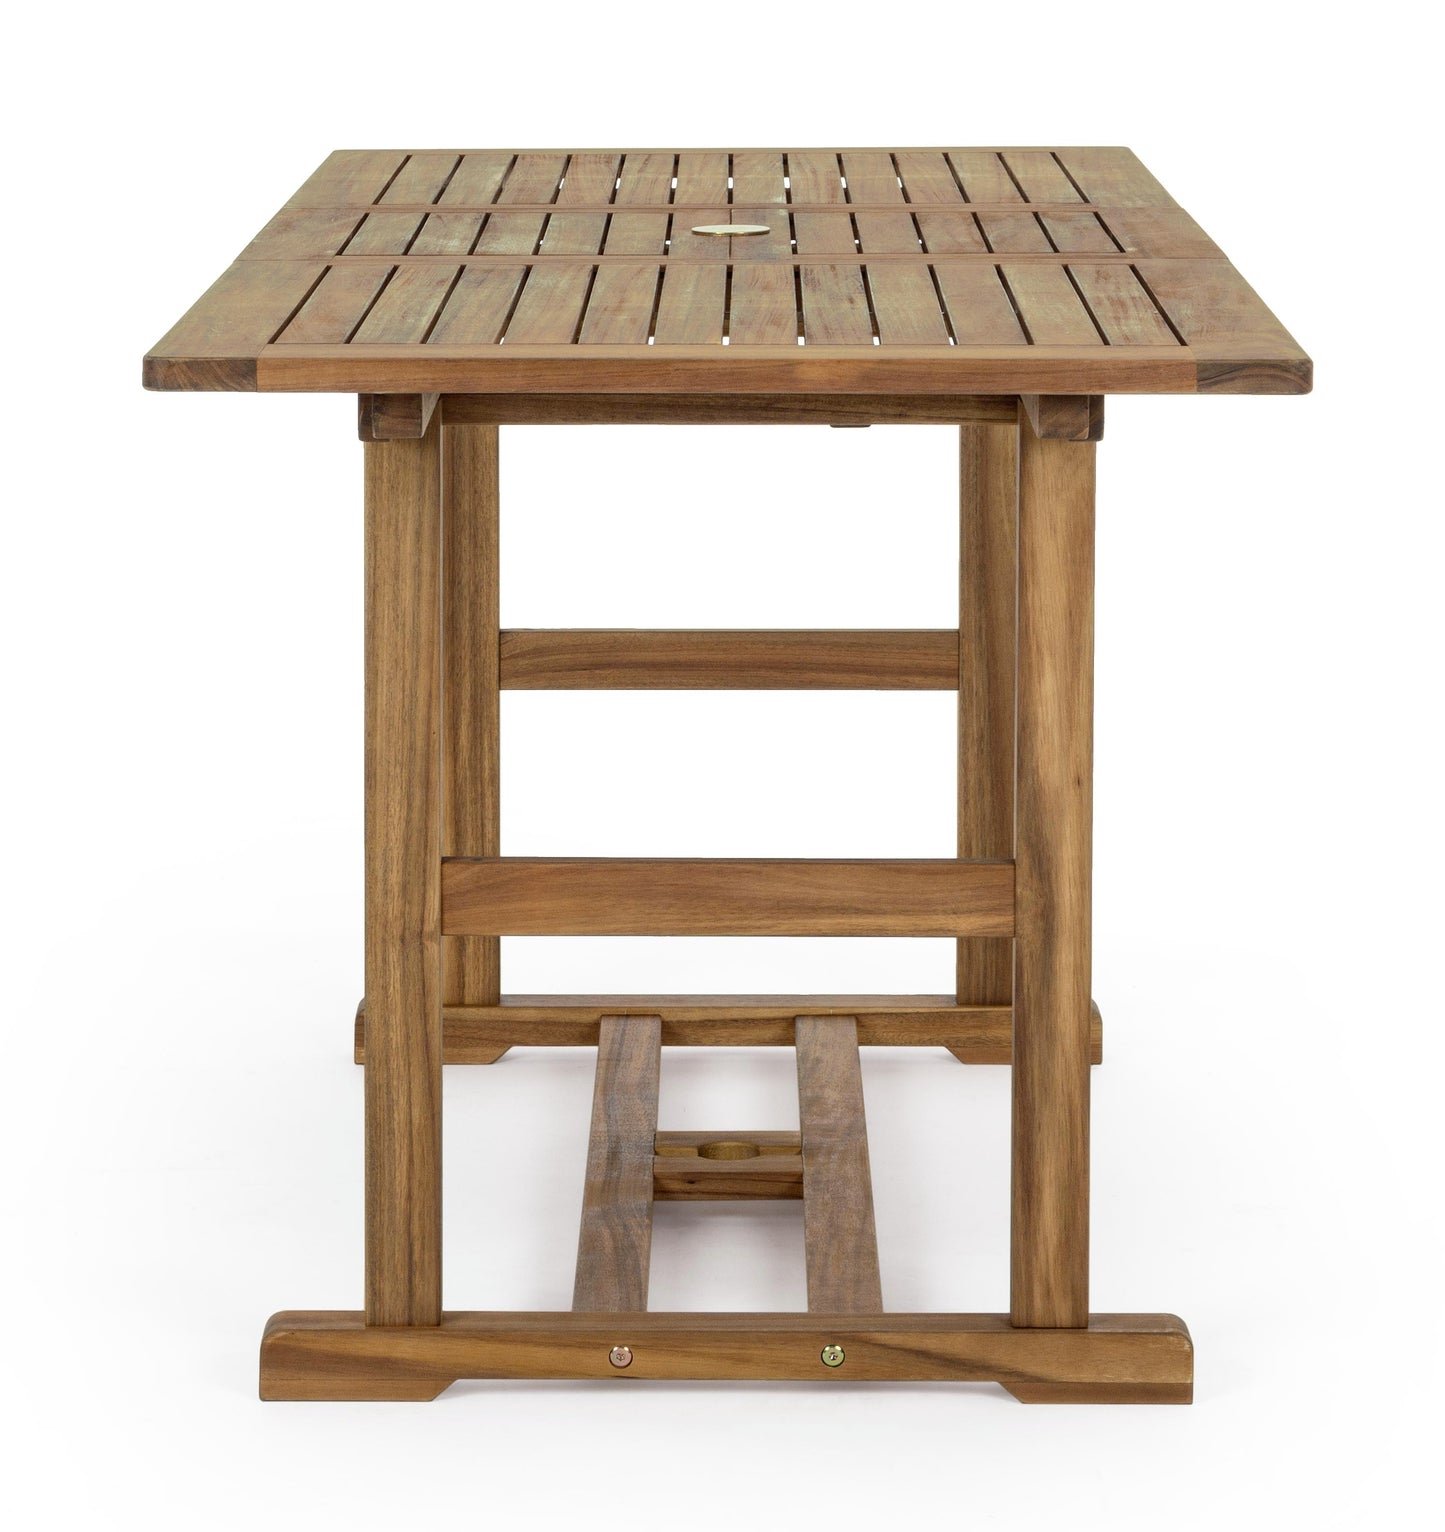 Tavolo allungabile in legno massiccio da esterno da 120 a 160 cm